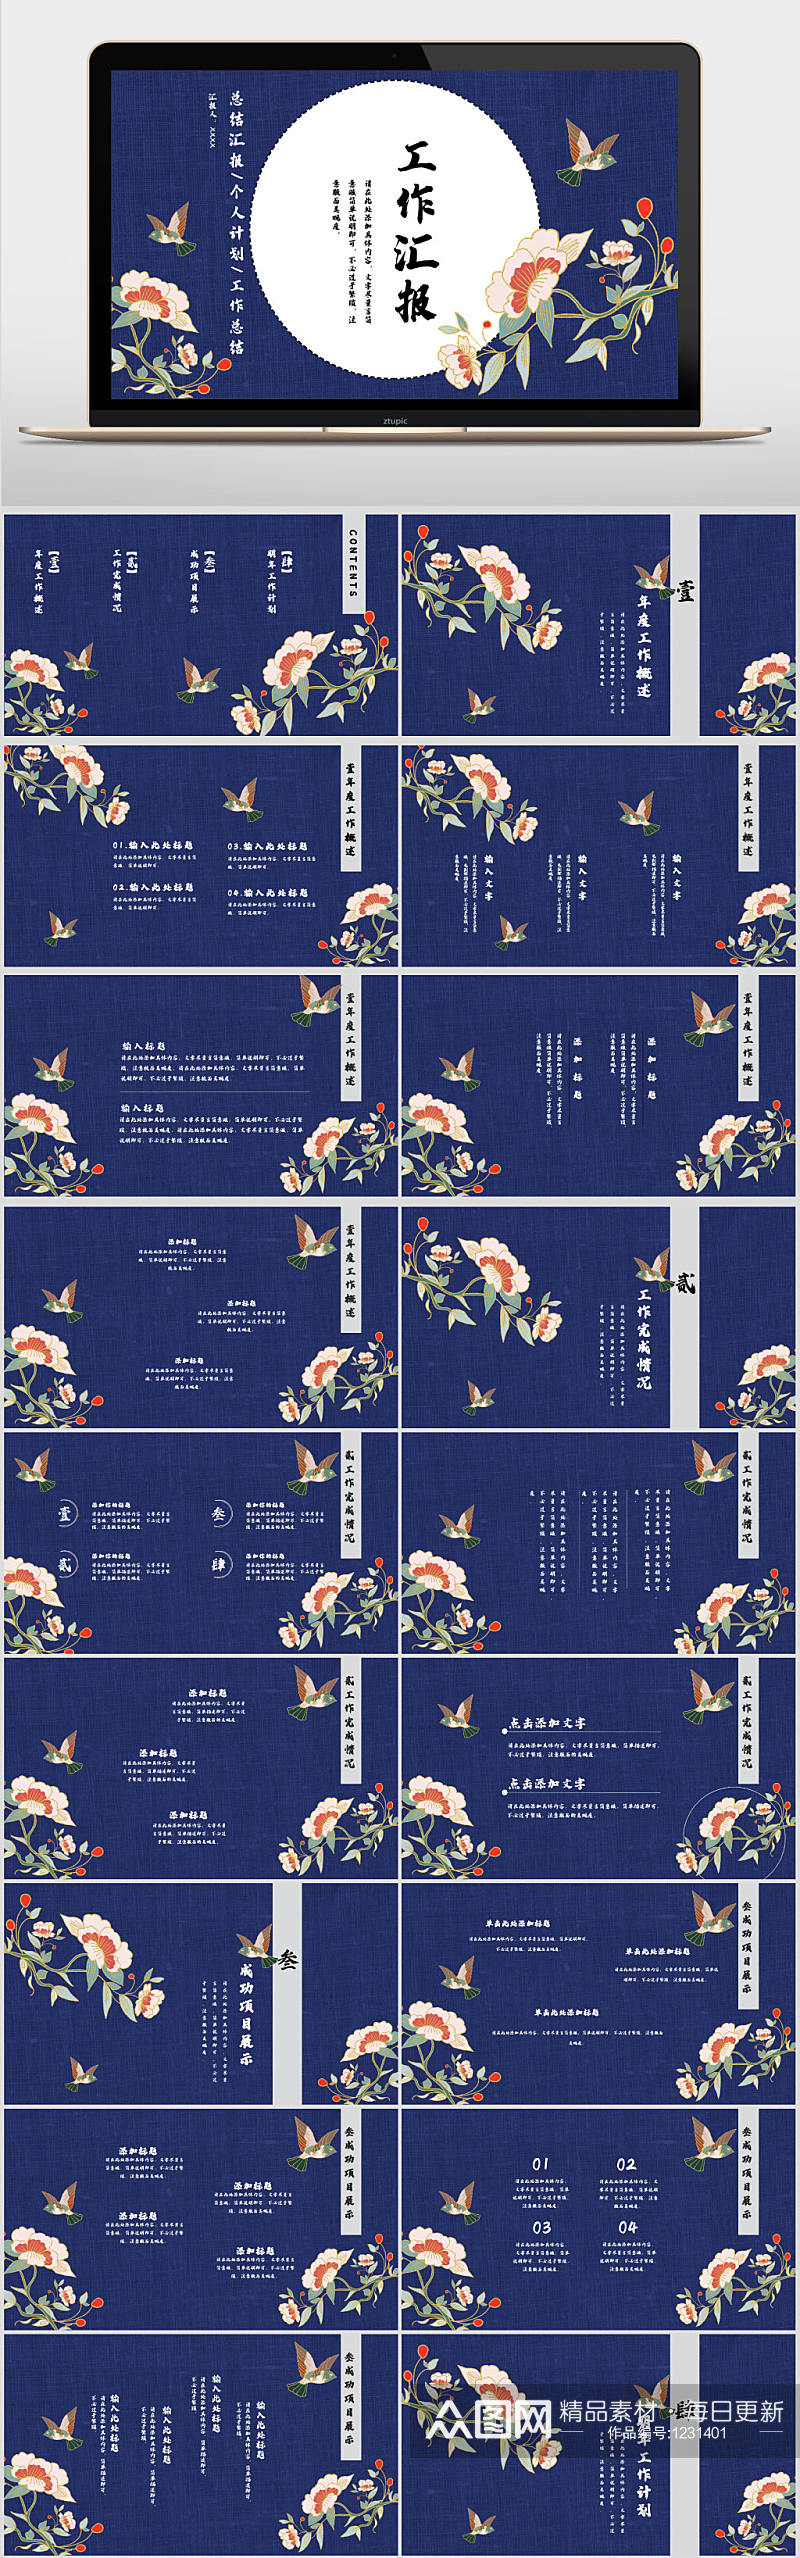 蓝色中国风花卉教育课件PPT模板素材